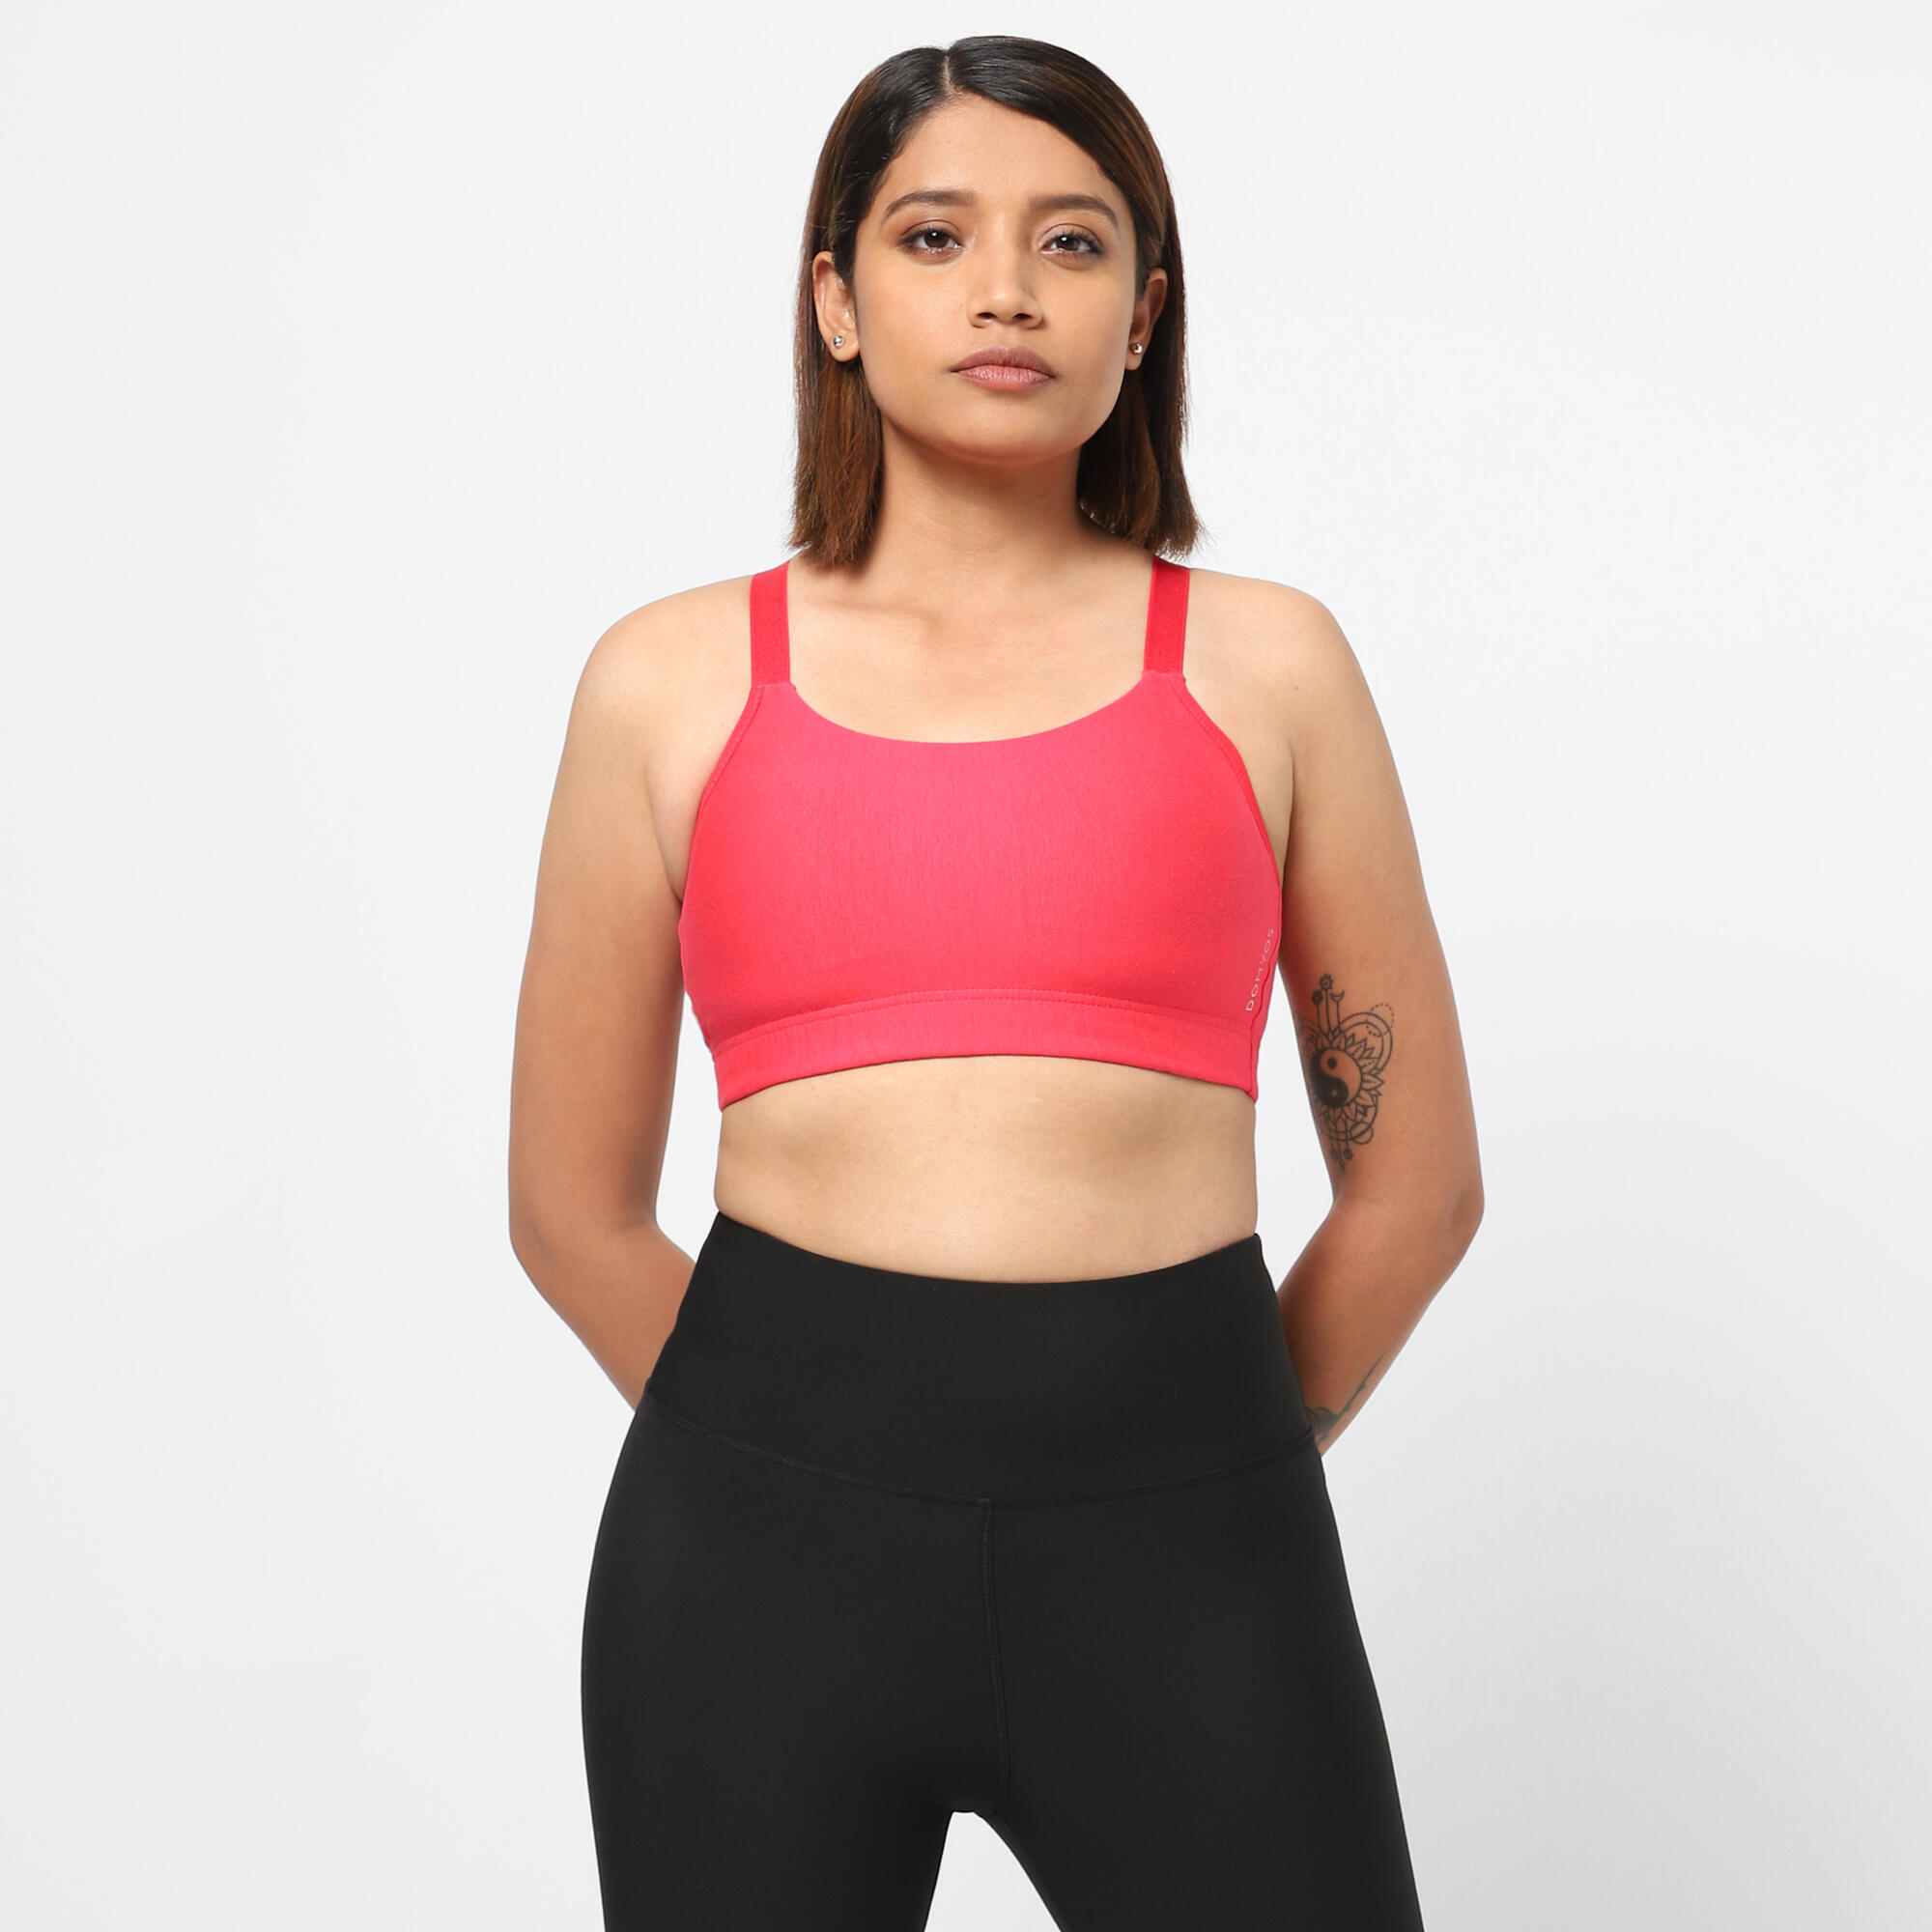 Buy Calvin Klein women sportswear fit padded mesh sports bra pink grey  Online